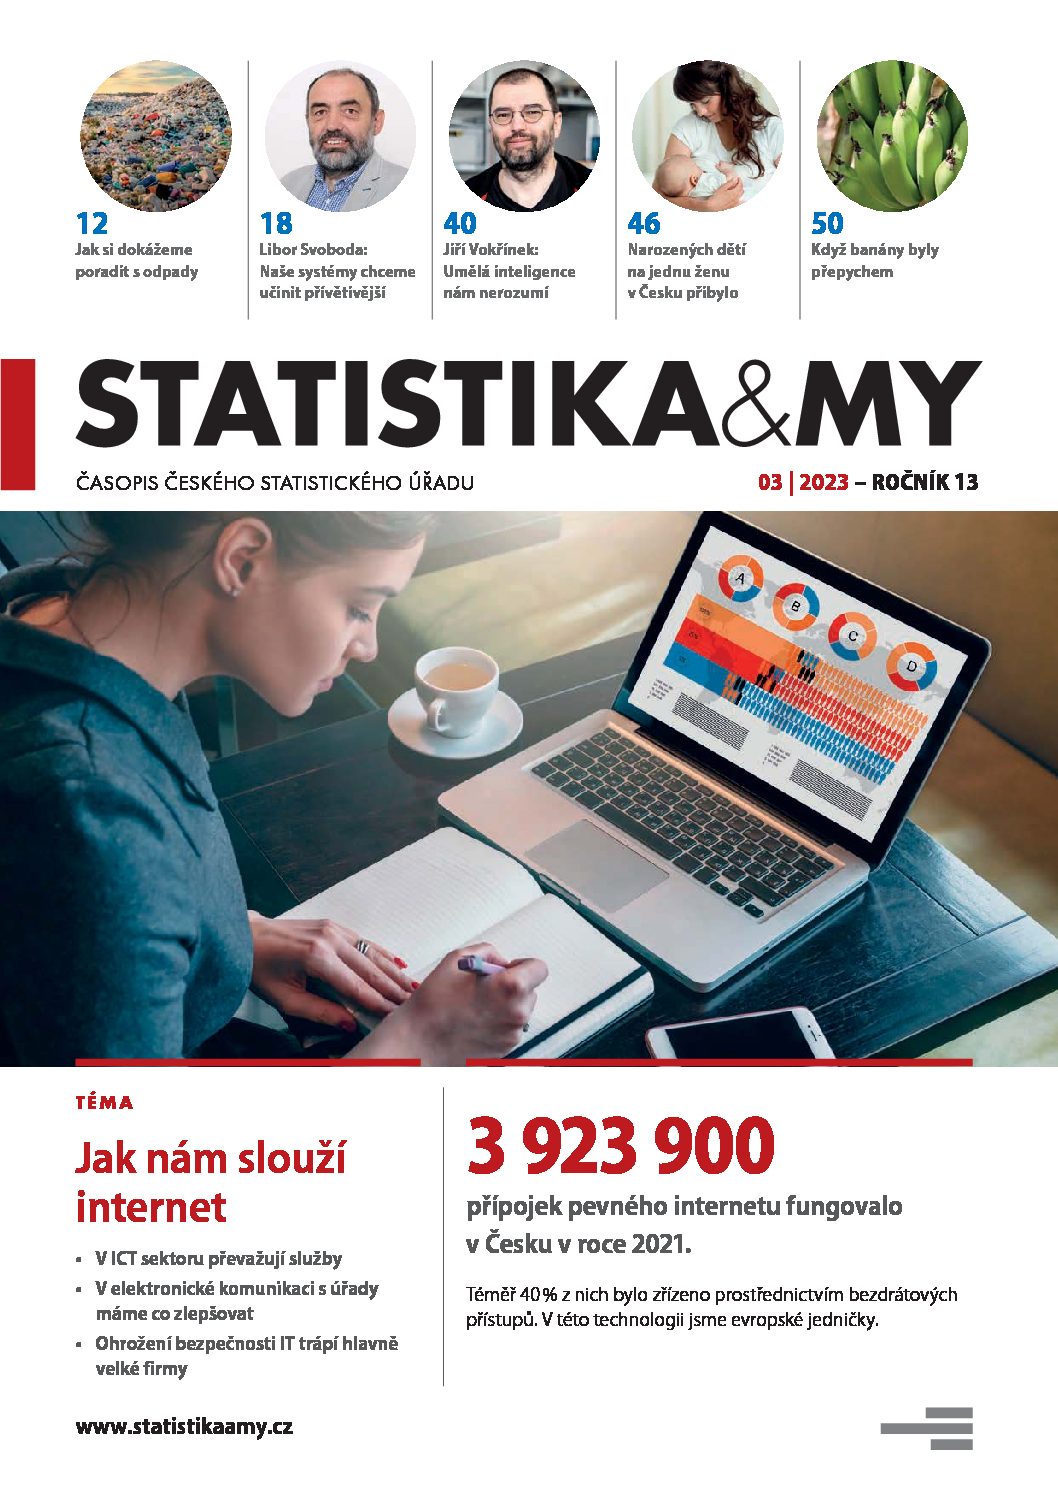 titulní strana časopisu Statistika&My 03/2023